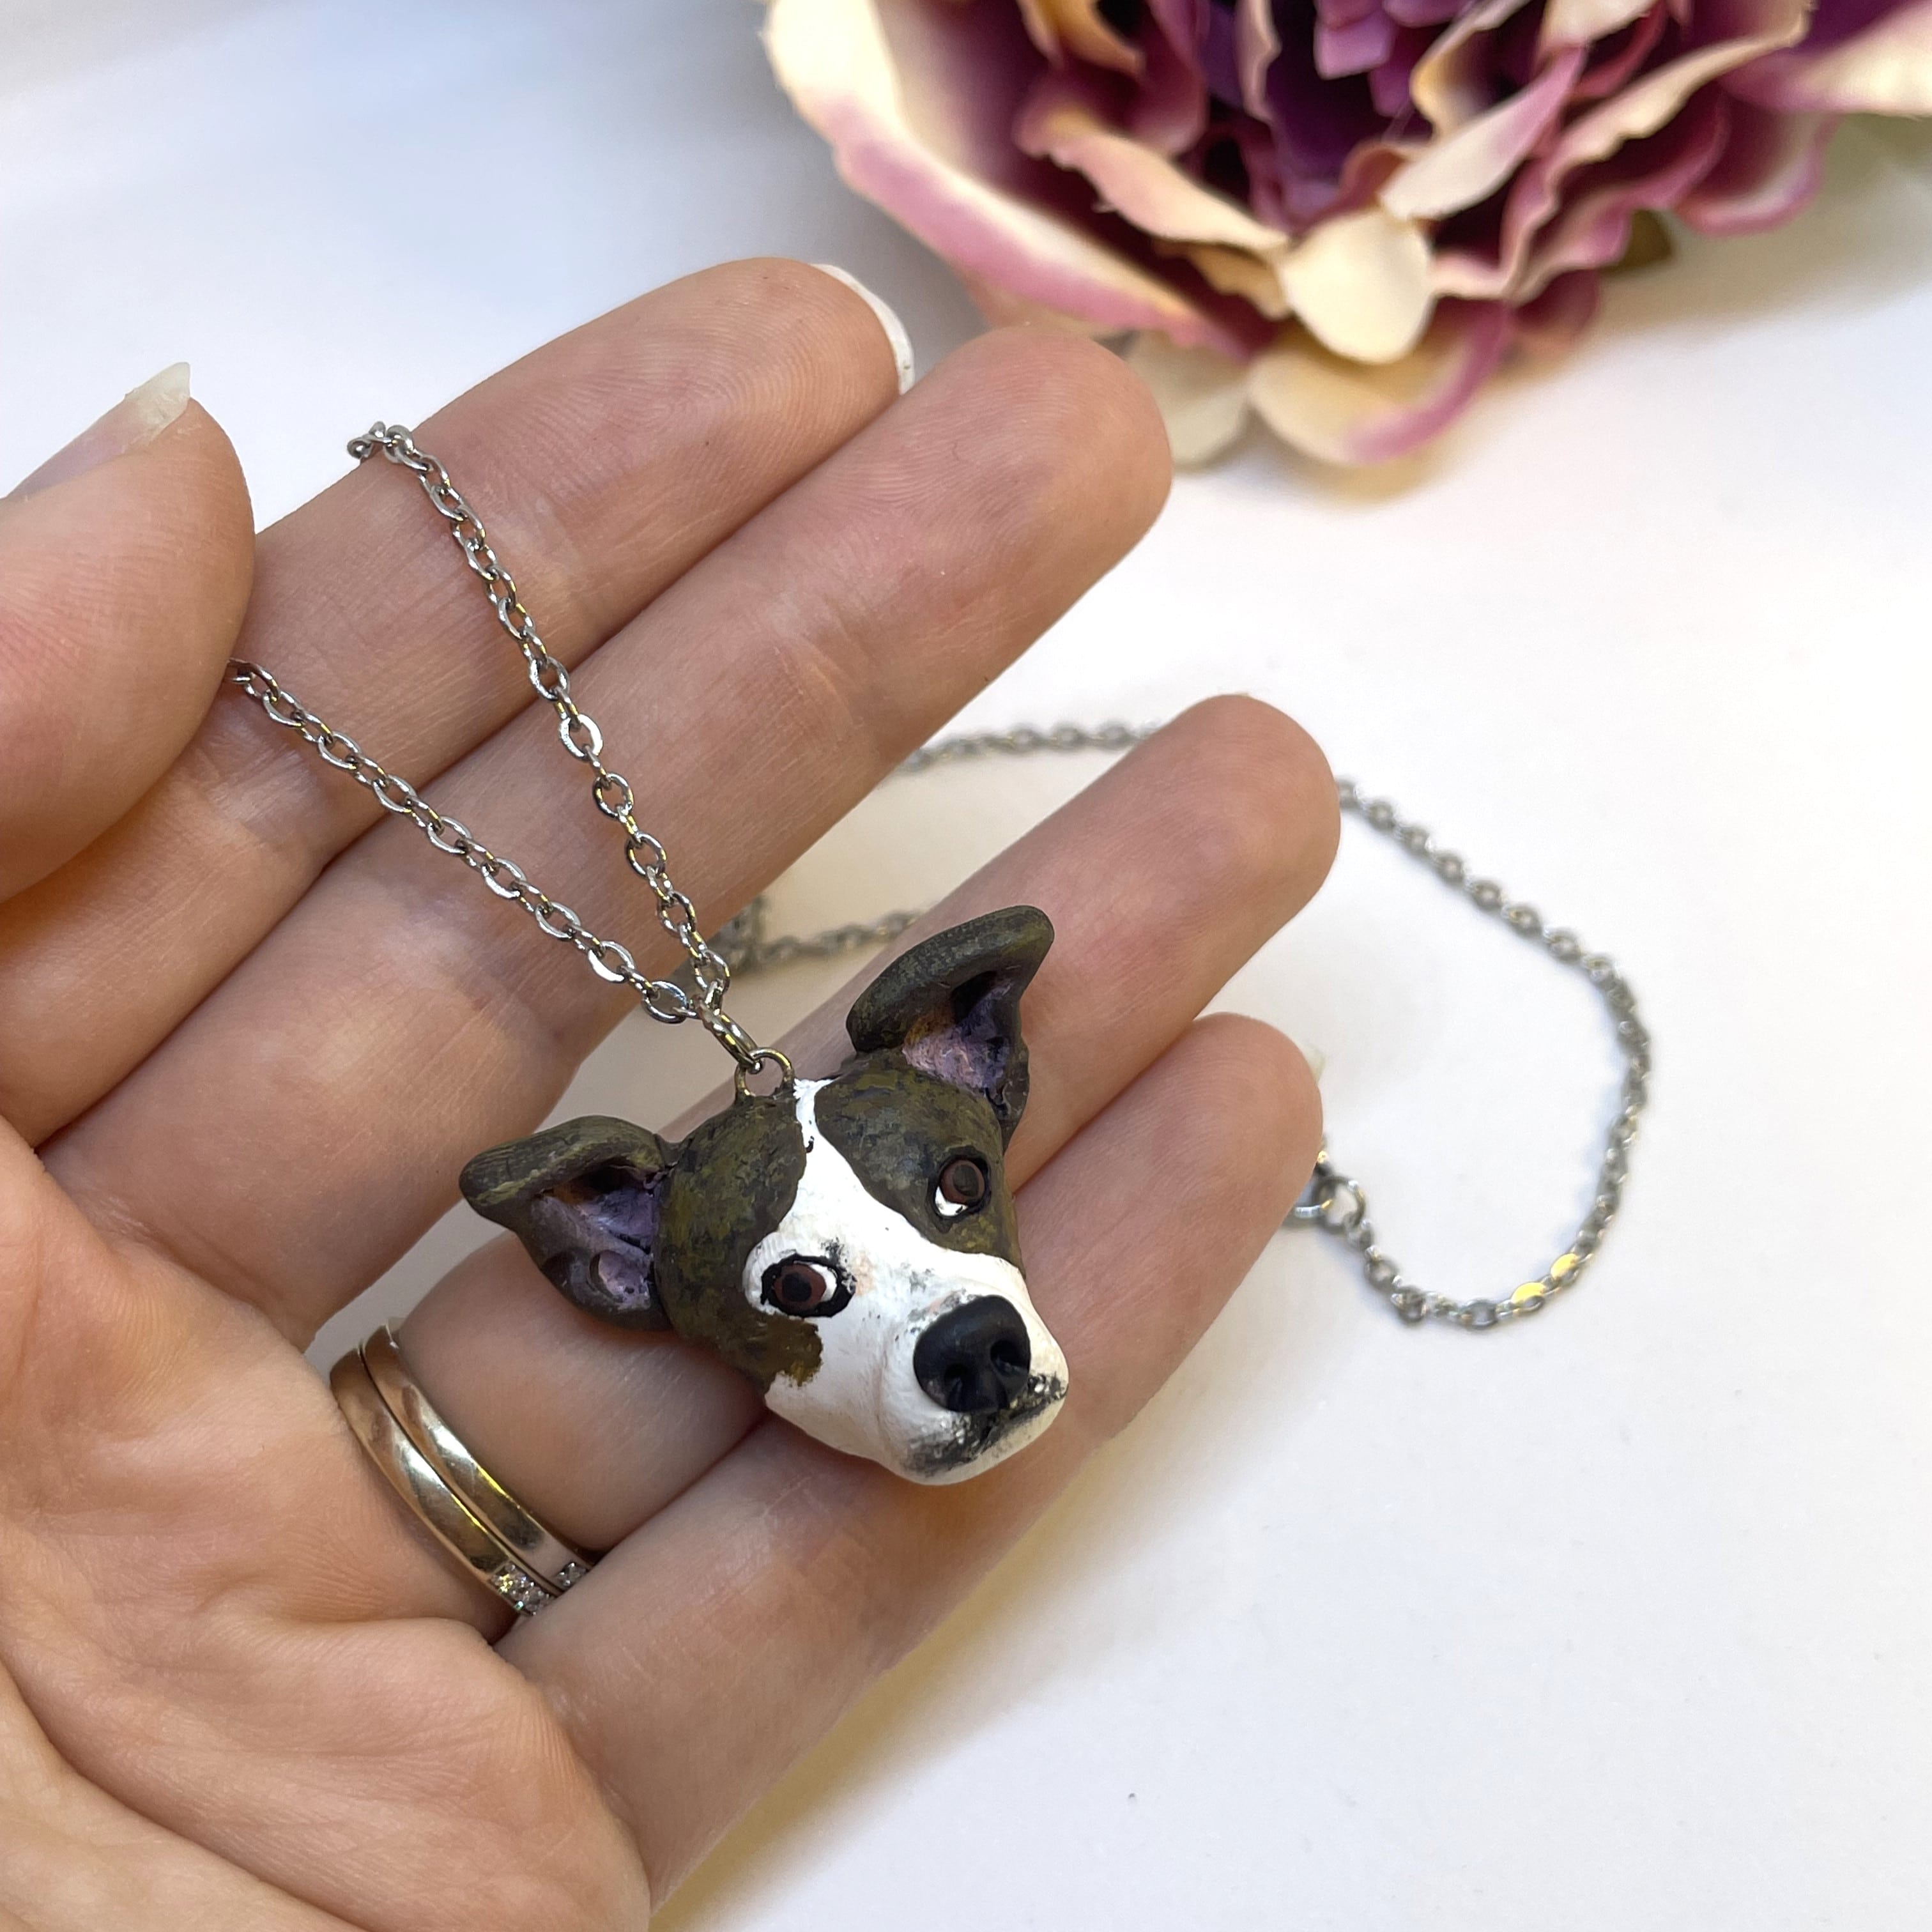 Golden Retriever Necklace | Porcelain Dog Pendant Necklace – Camp Hollow